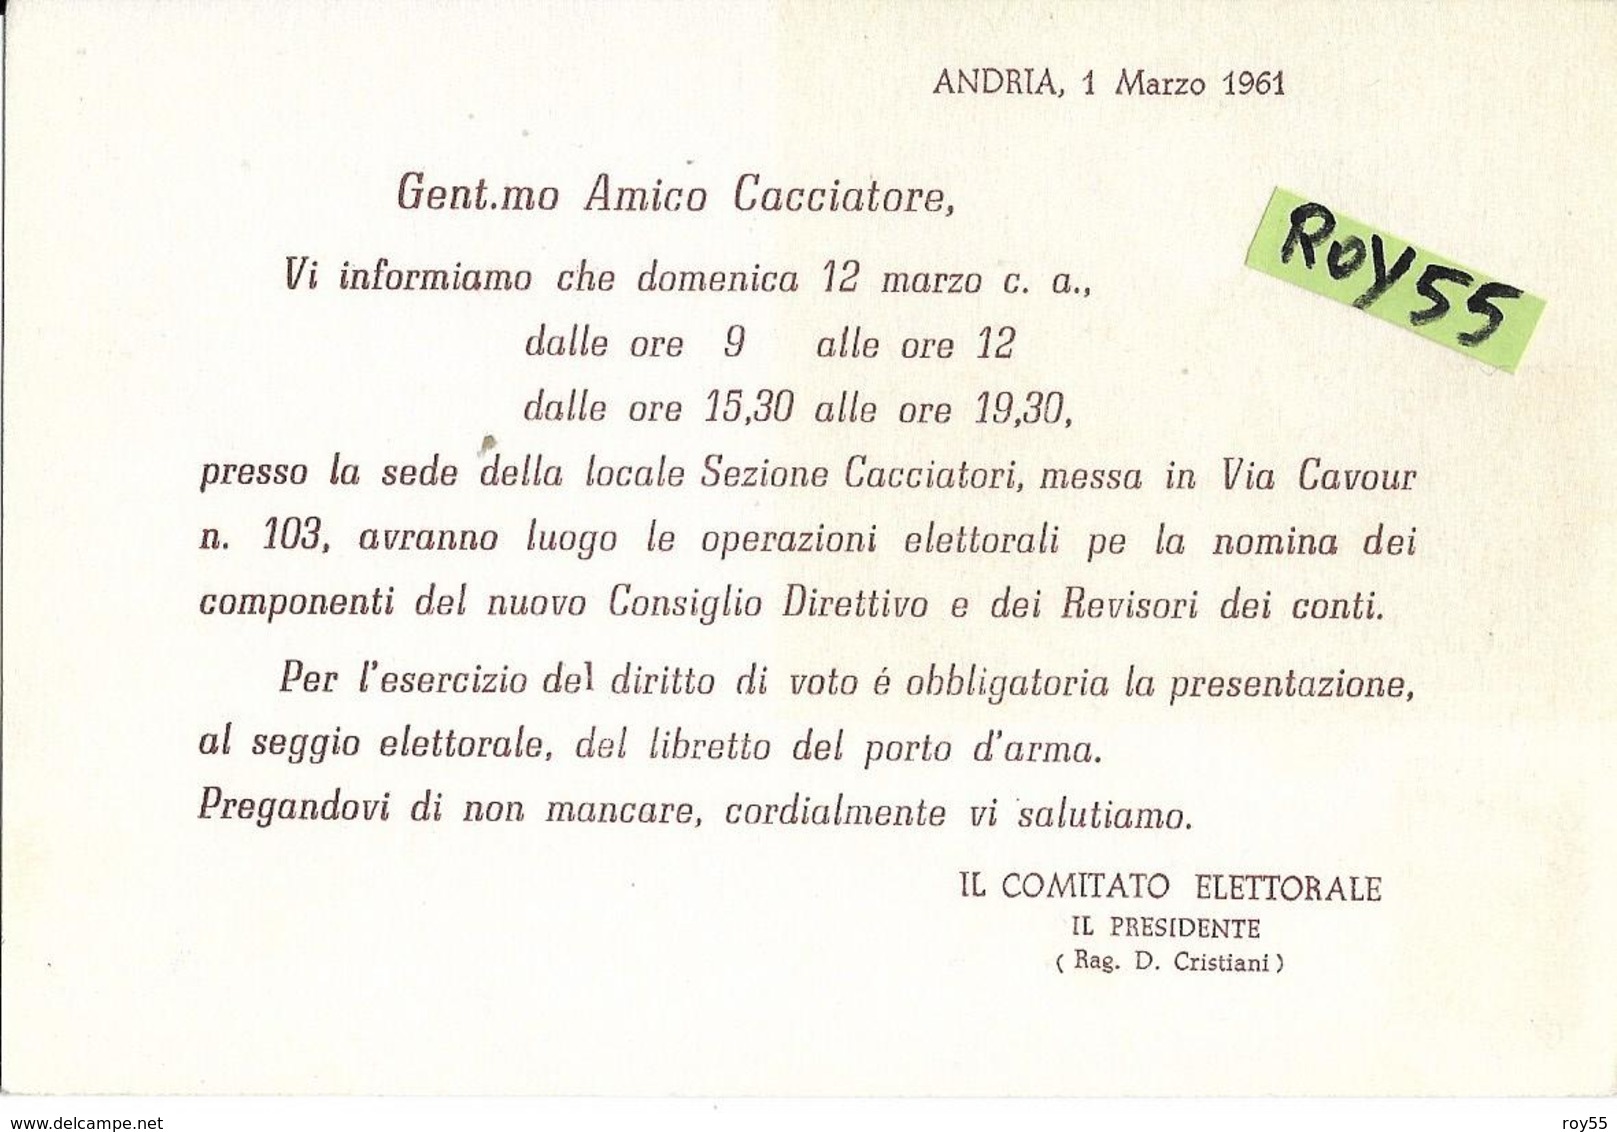 Puglia-andria  Via Cavour Sede Locale Sezione Cacciatori Cartolina Invito Ai Cacciatori  Retro Pubblicita Cartucce  Sipe - Andria